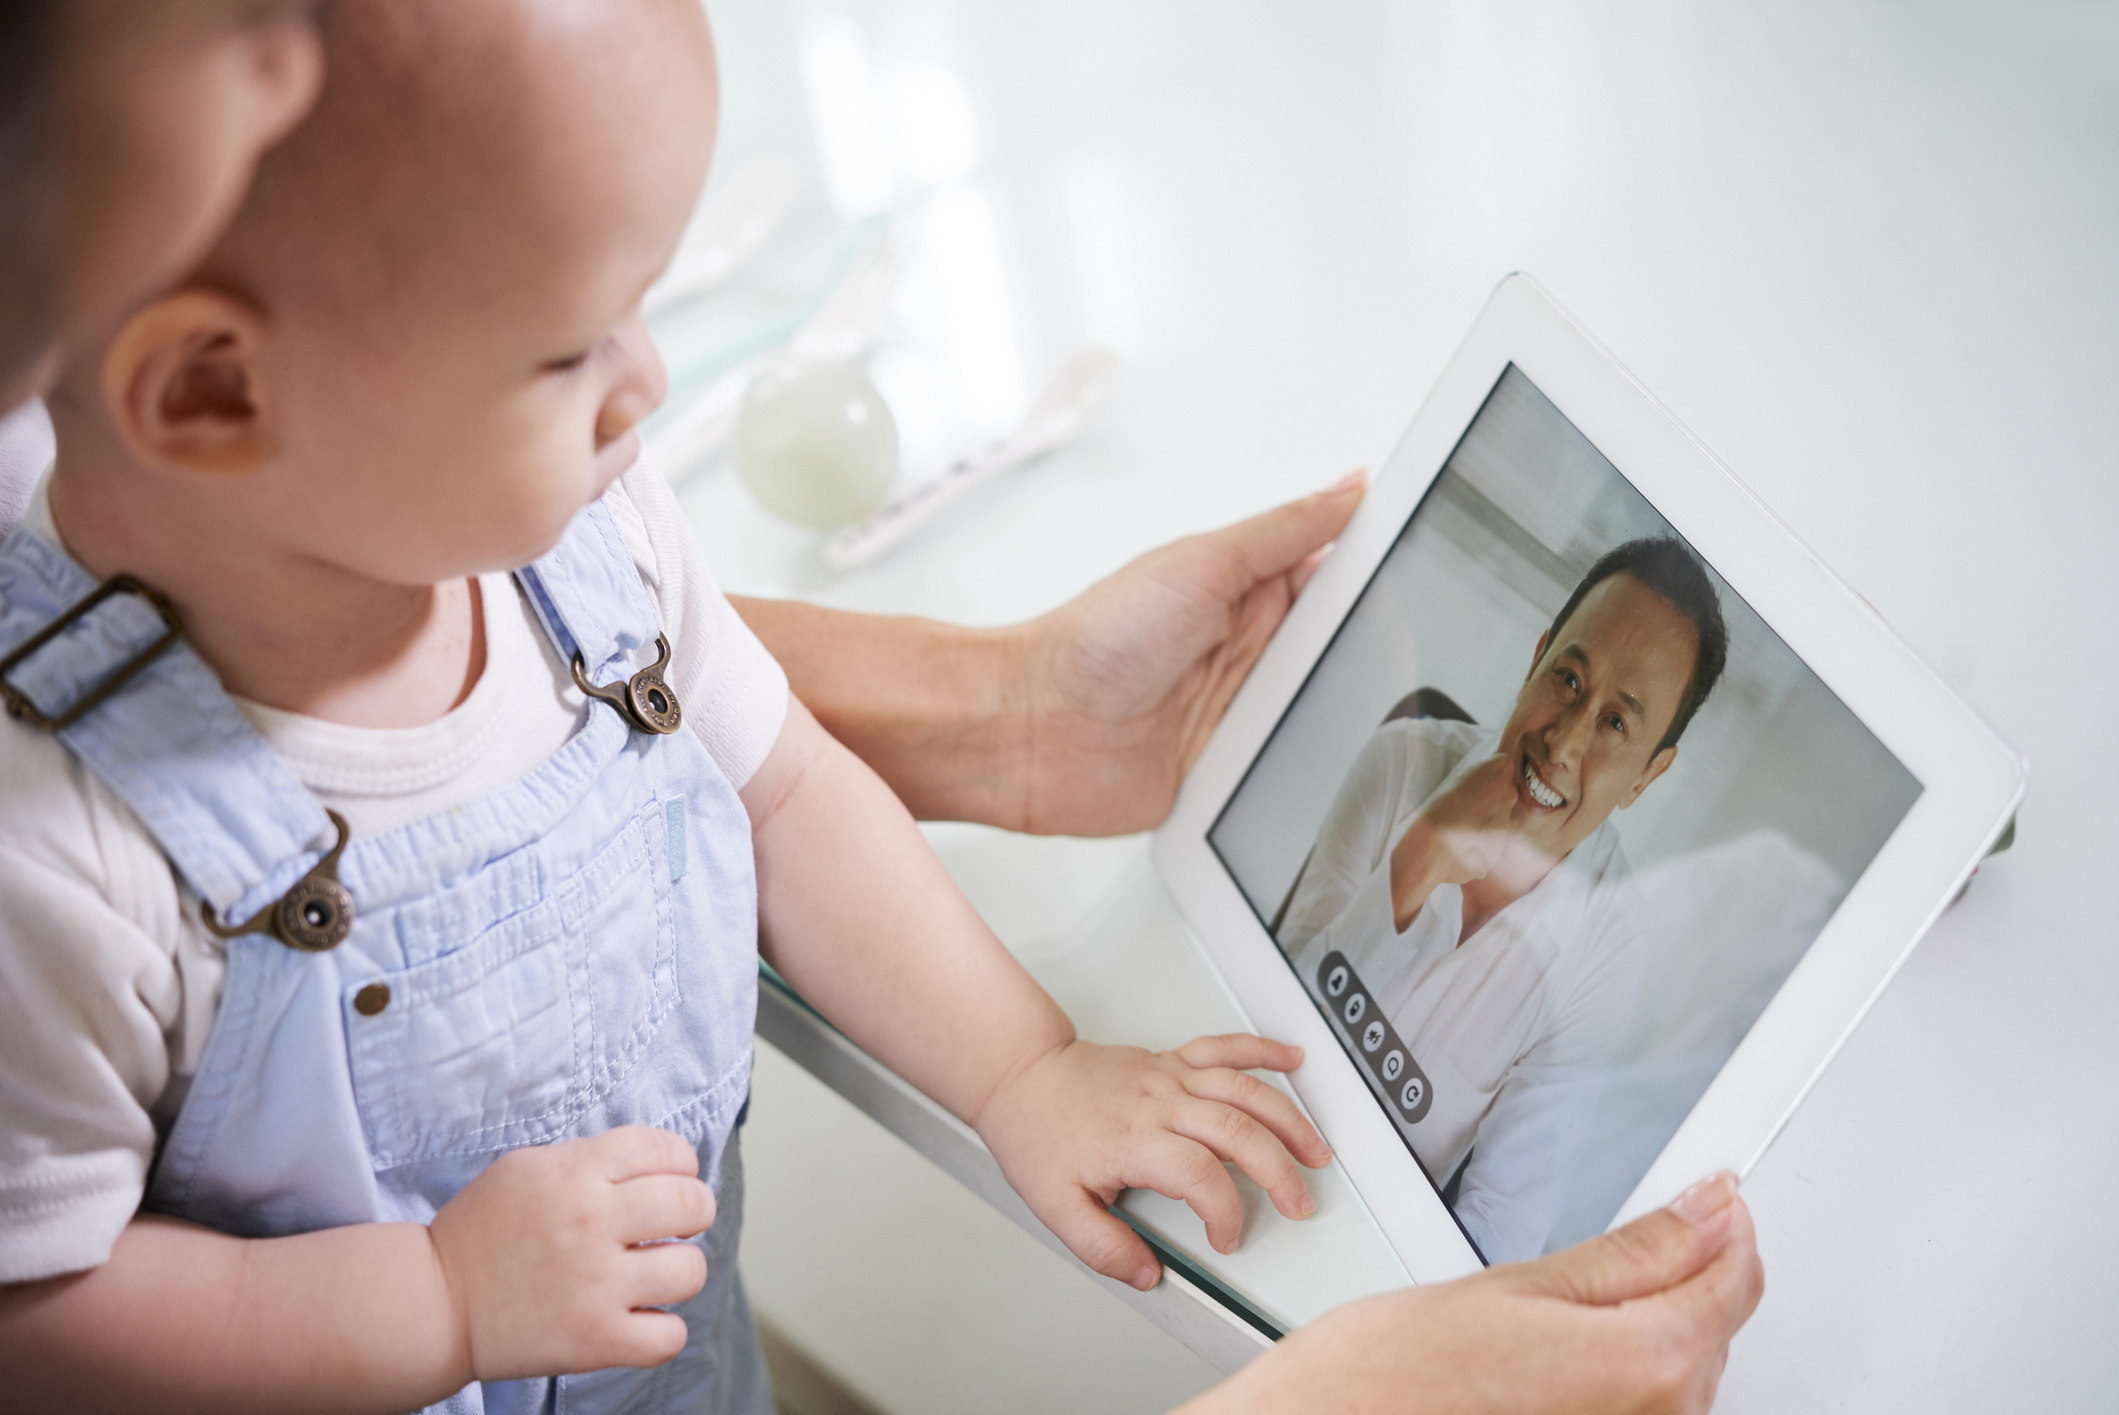 Ψηφιακή υγεία: Οι νέες ψηφιακές πλατφόρμες για παιδιά και έφηβους στον χώρο της υγείας